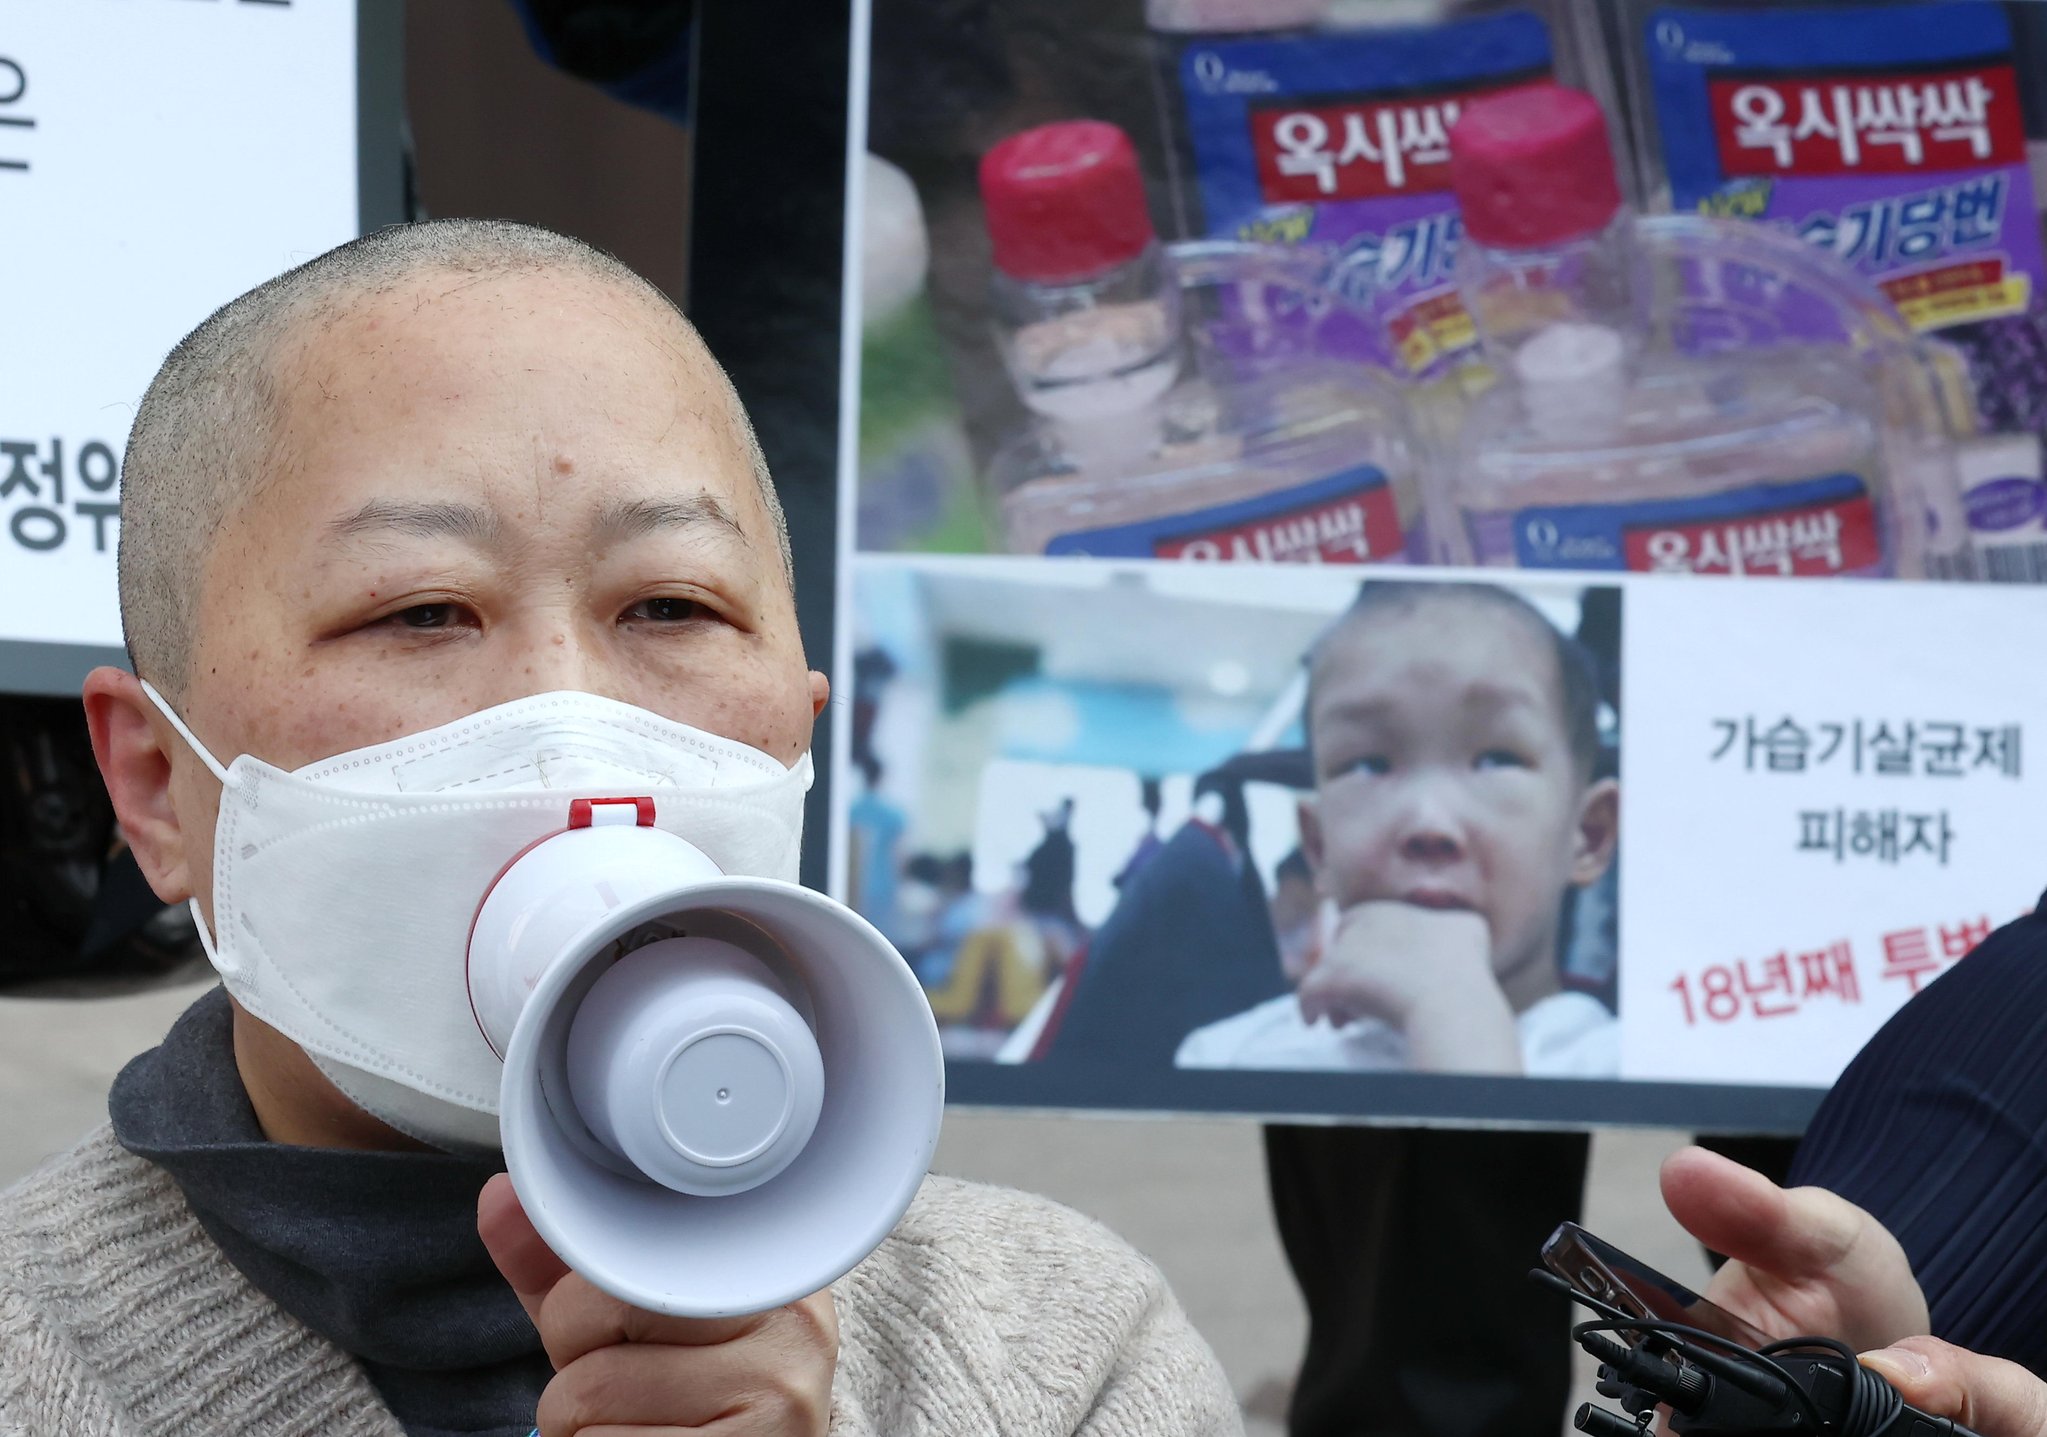 22일 가습기 살균제 피해자인 박수진씨가 조정안 수정을 요구하며 삭발한 뒤 발언하고 있다. 연합뉴스